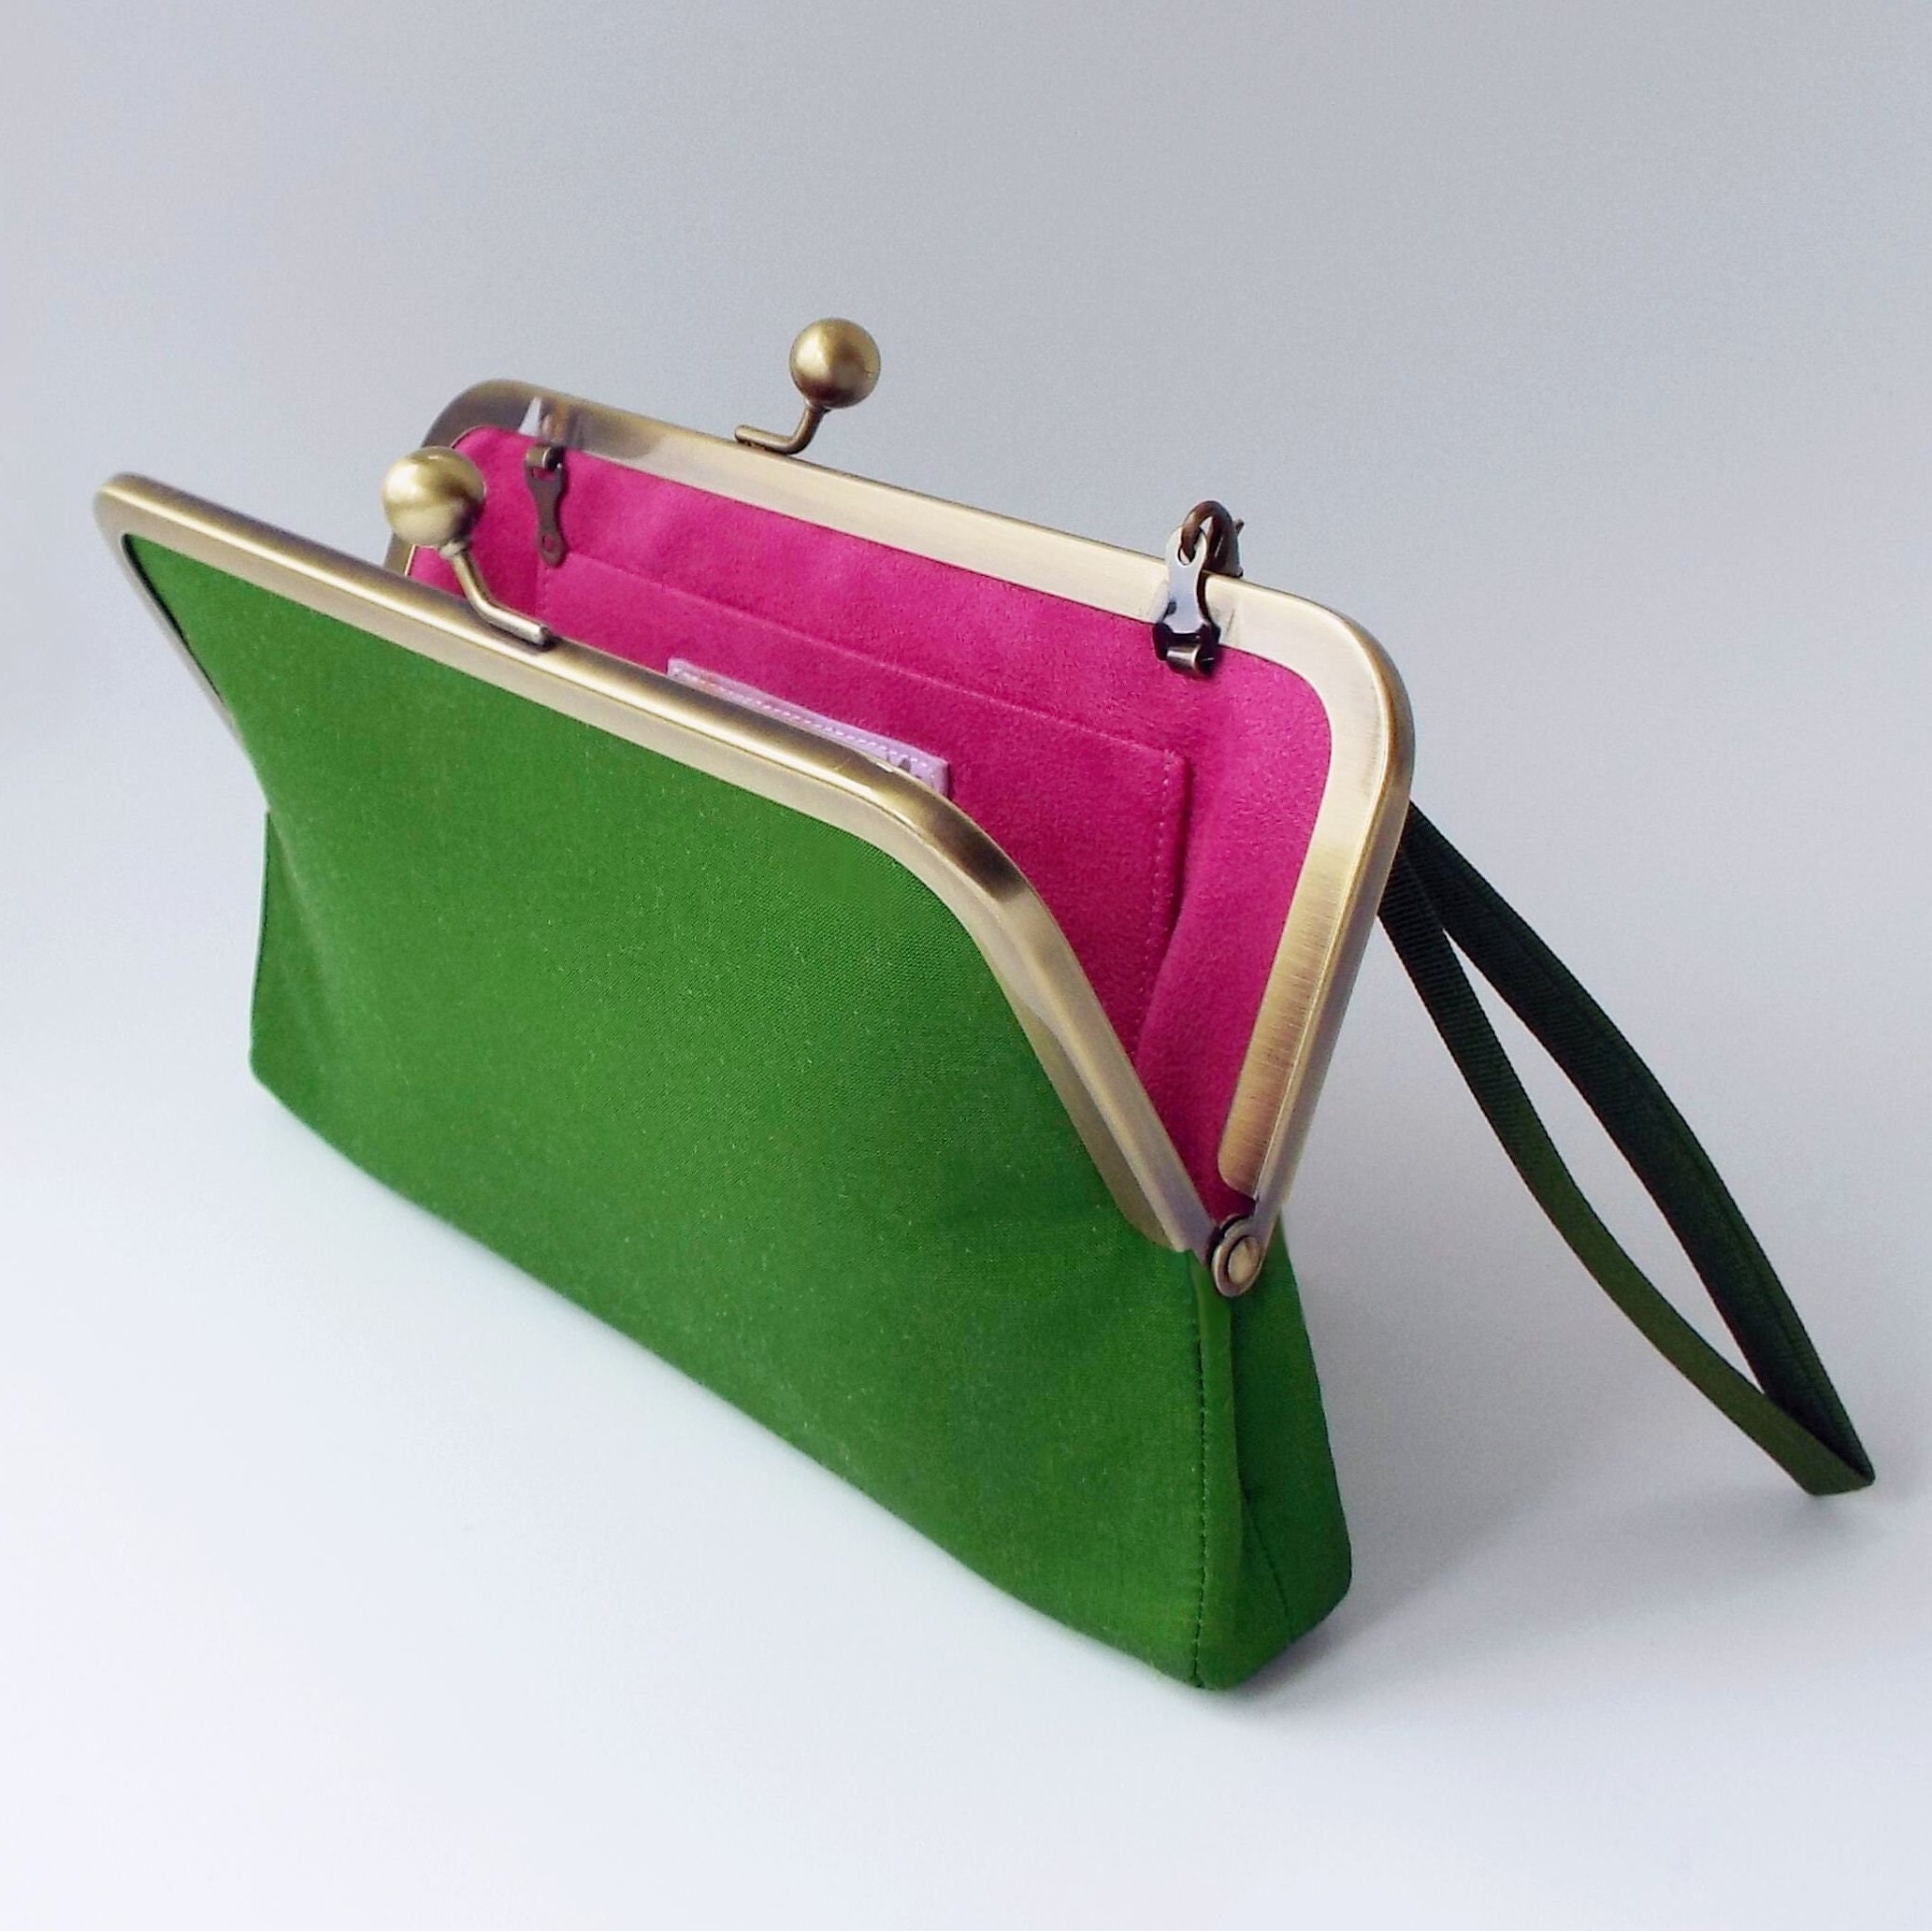 Buy SKYHUNT Women Green Handbag GREEN Online @ Best Price in India |  Flipkart.com